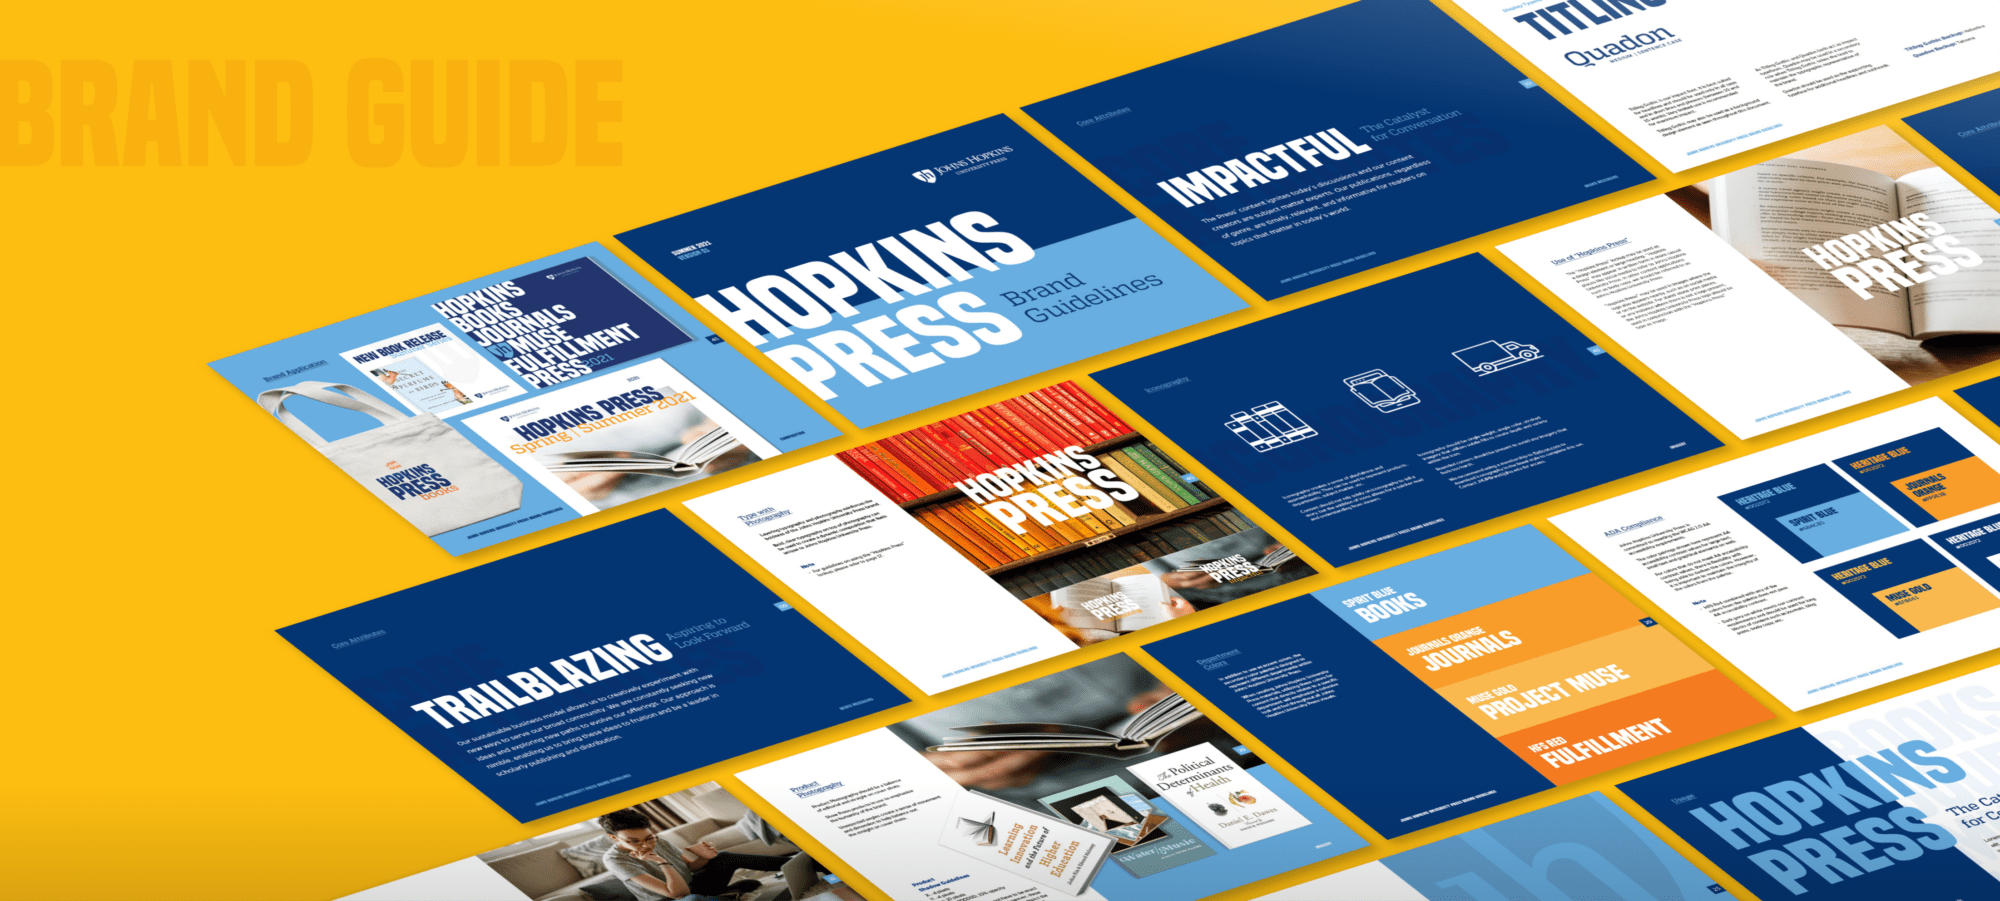 John Hopkins University Press brand guideline imagery